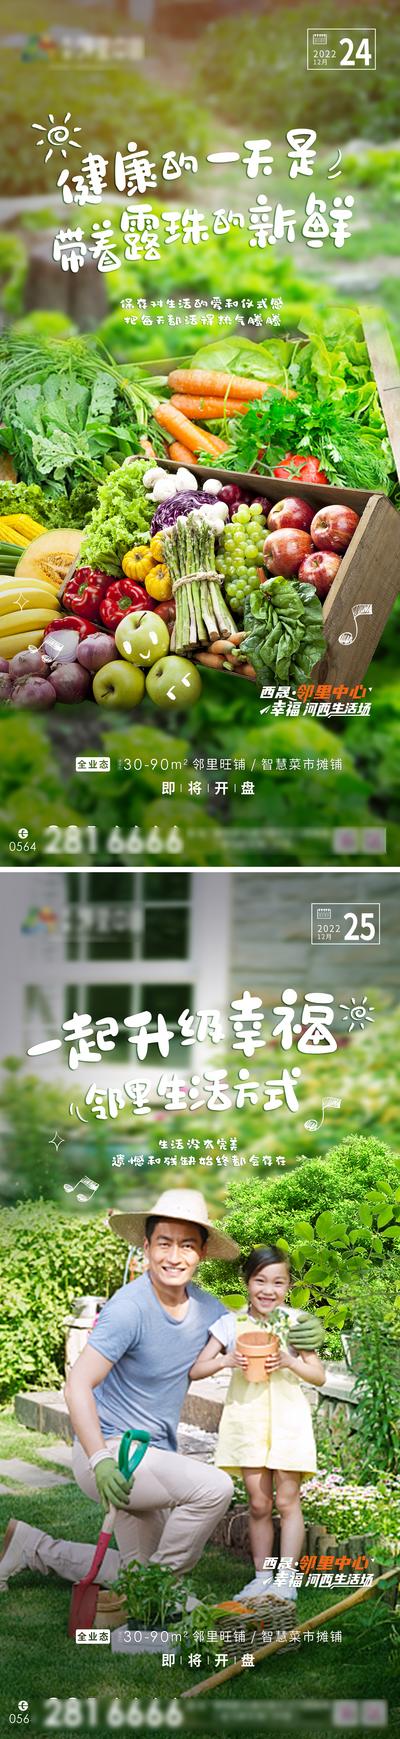 南门网 海报 房地产 智慧 绿色 菜市场 简约 场景 系列